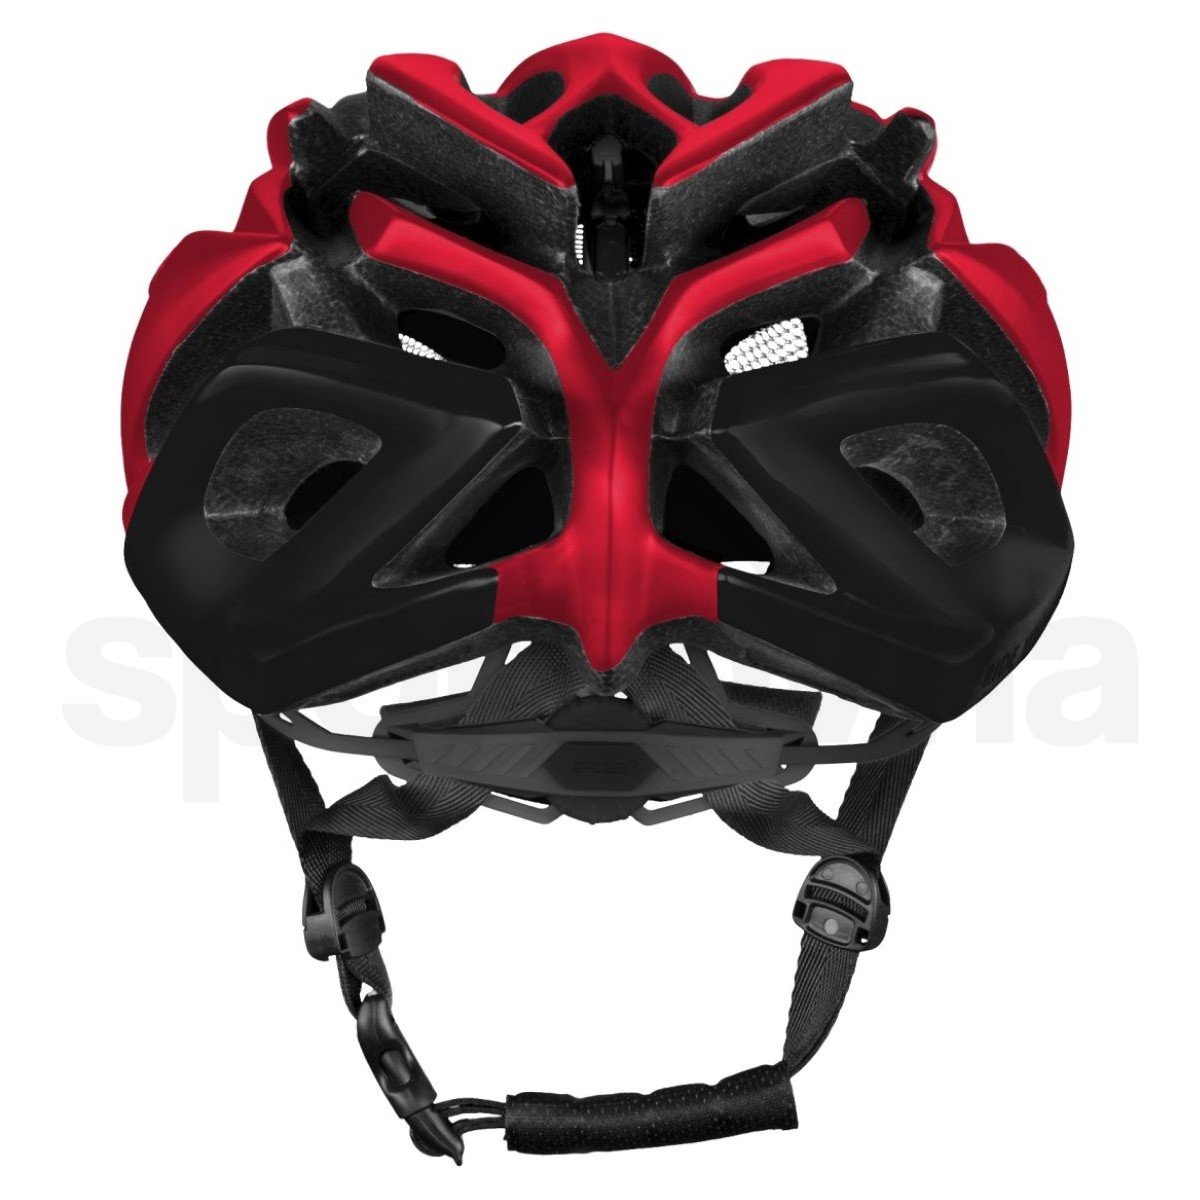 Cyklo helma R2 Pro-Tec - červená/černá